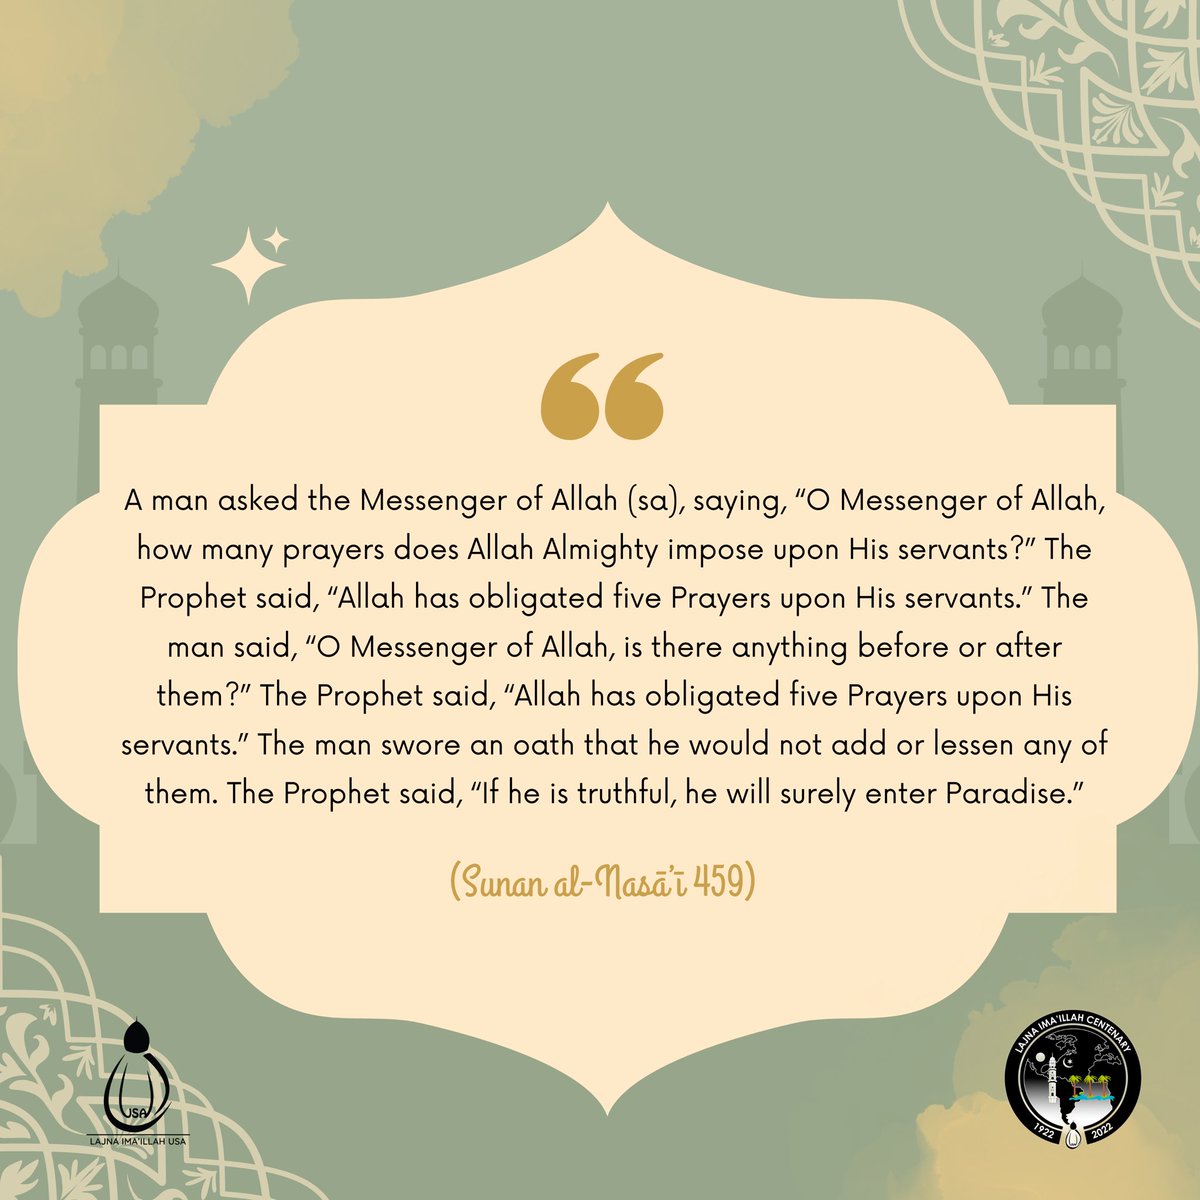 #Islam
#ProphetMuhammad 
#Lajnacentenary